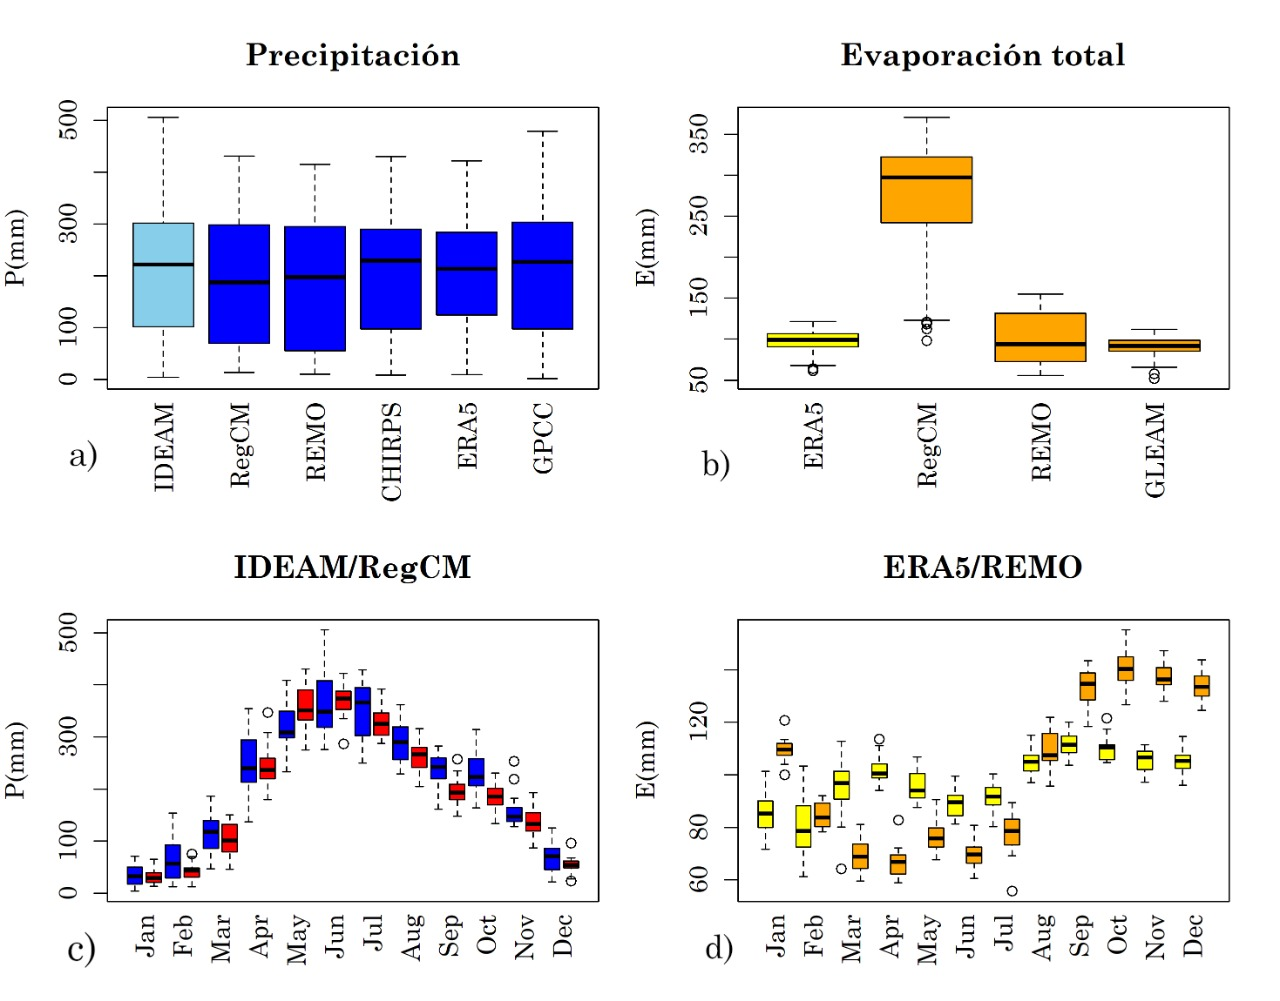 Diagrama de cajas para las series de tiempo de precipitación (a) y evaporación total (b) mensual promedio en la zona de estudio. (c) Diagramas de cajas para la precipitación mensual según los datos de IDEAM, CHIRPS, ERA5, GPCC y los ensambles de RegCM y REMO. (d) Diagramas de cajas para la evaporación total según los datos de ERA5, GLEAM y los ensambles de RegCM y REMO